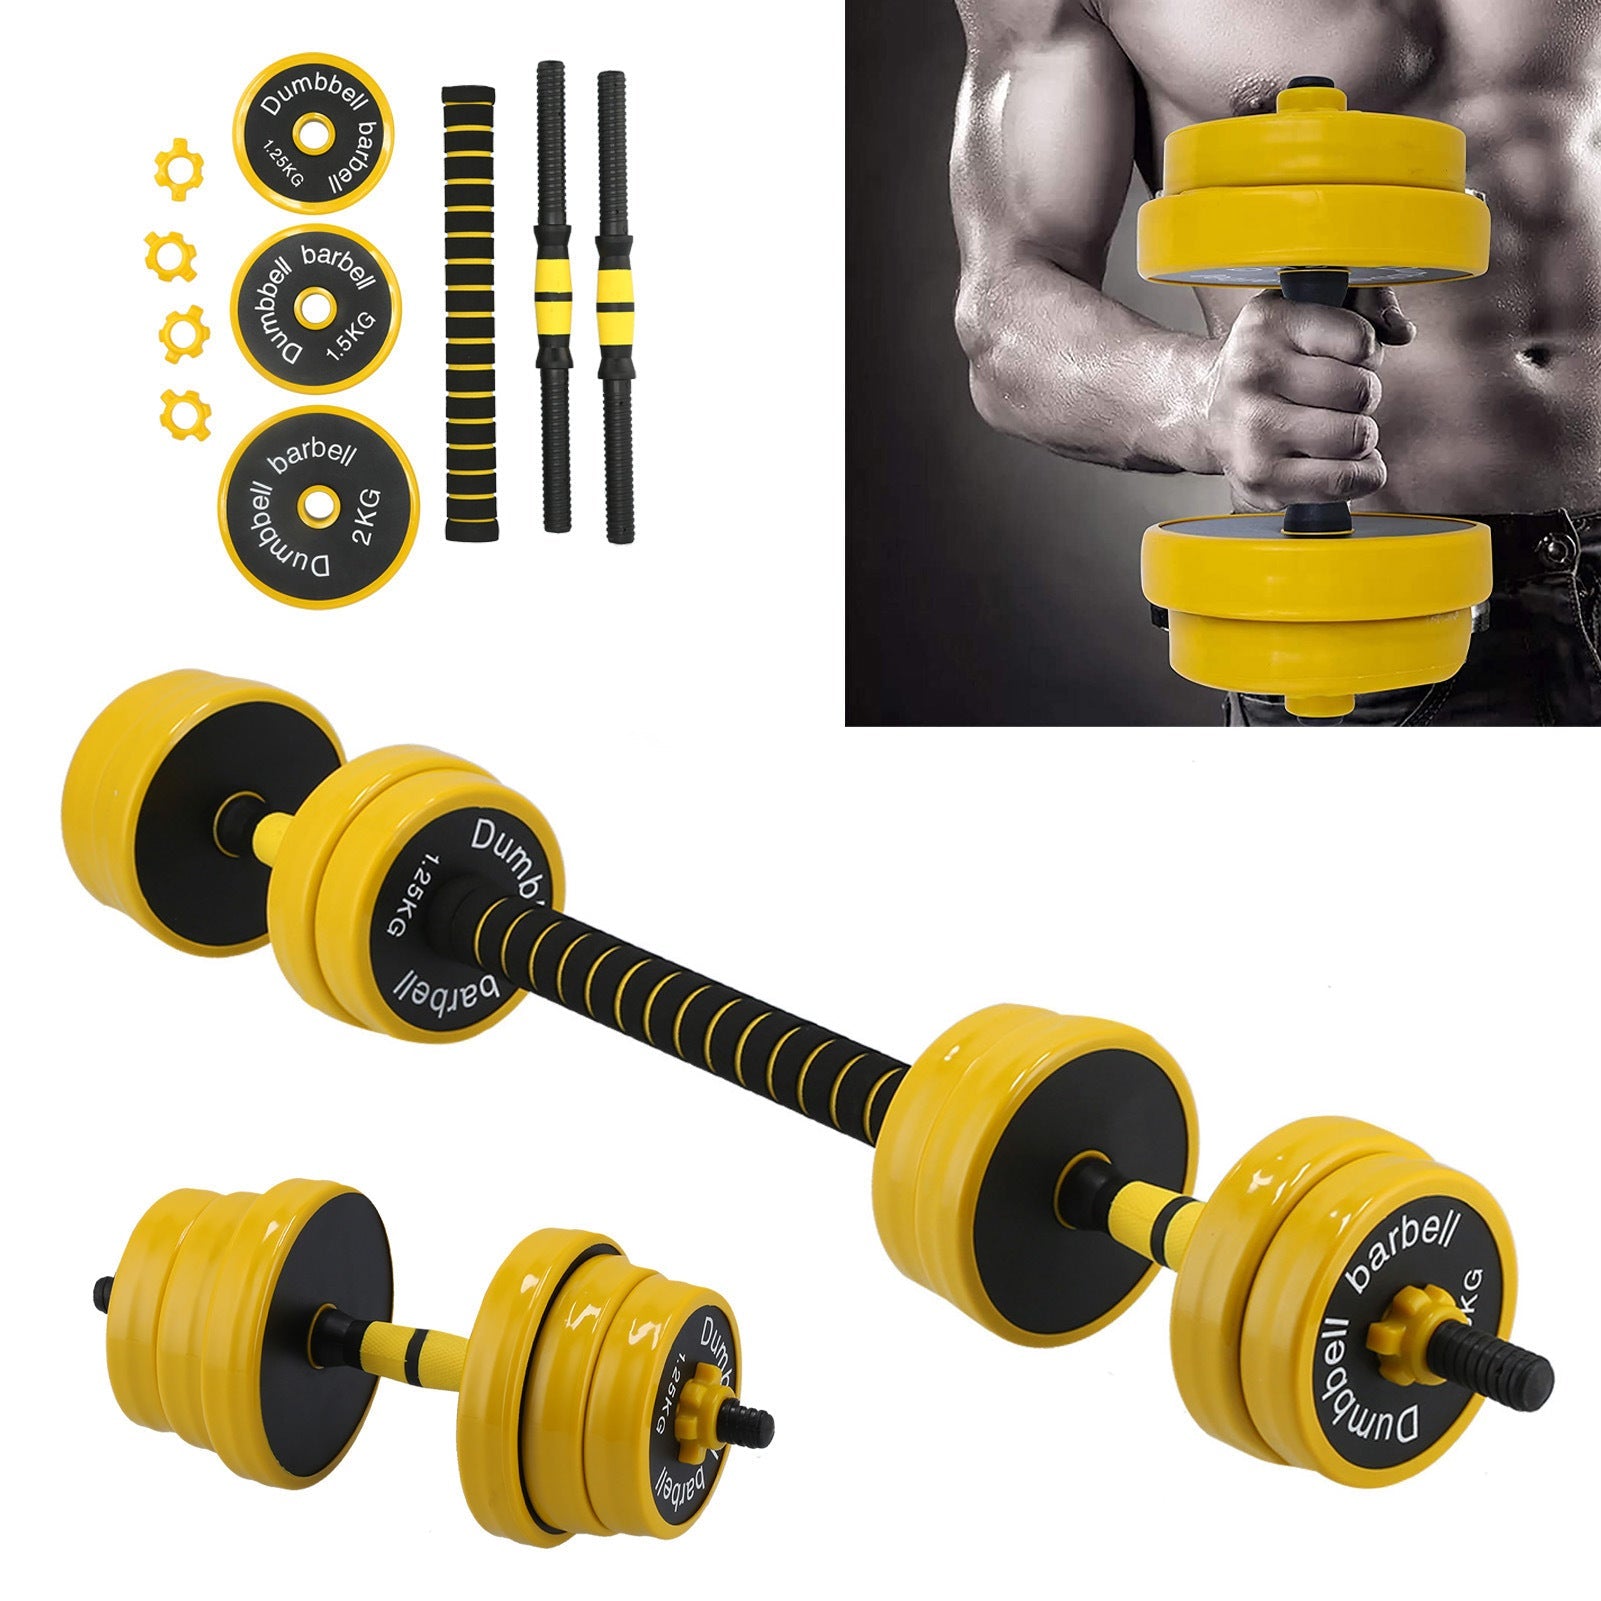 20KG Dumbbell Set 2 in 1 Adjustable Weights Dumbbells Set for Home Gym Fitness Workout Moorescarts